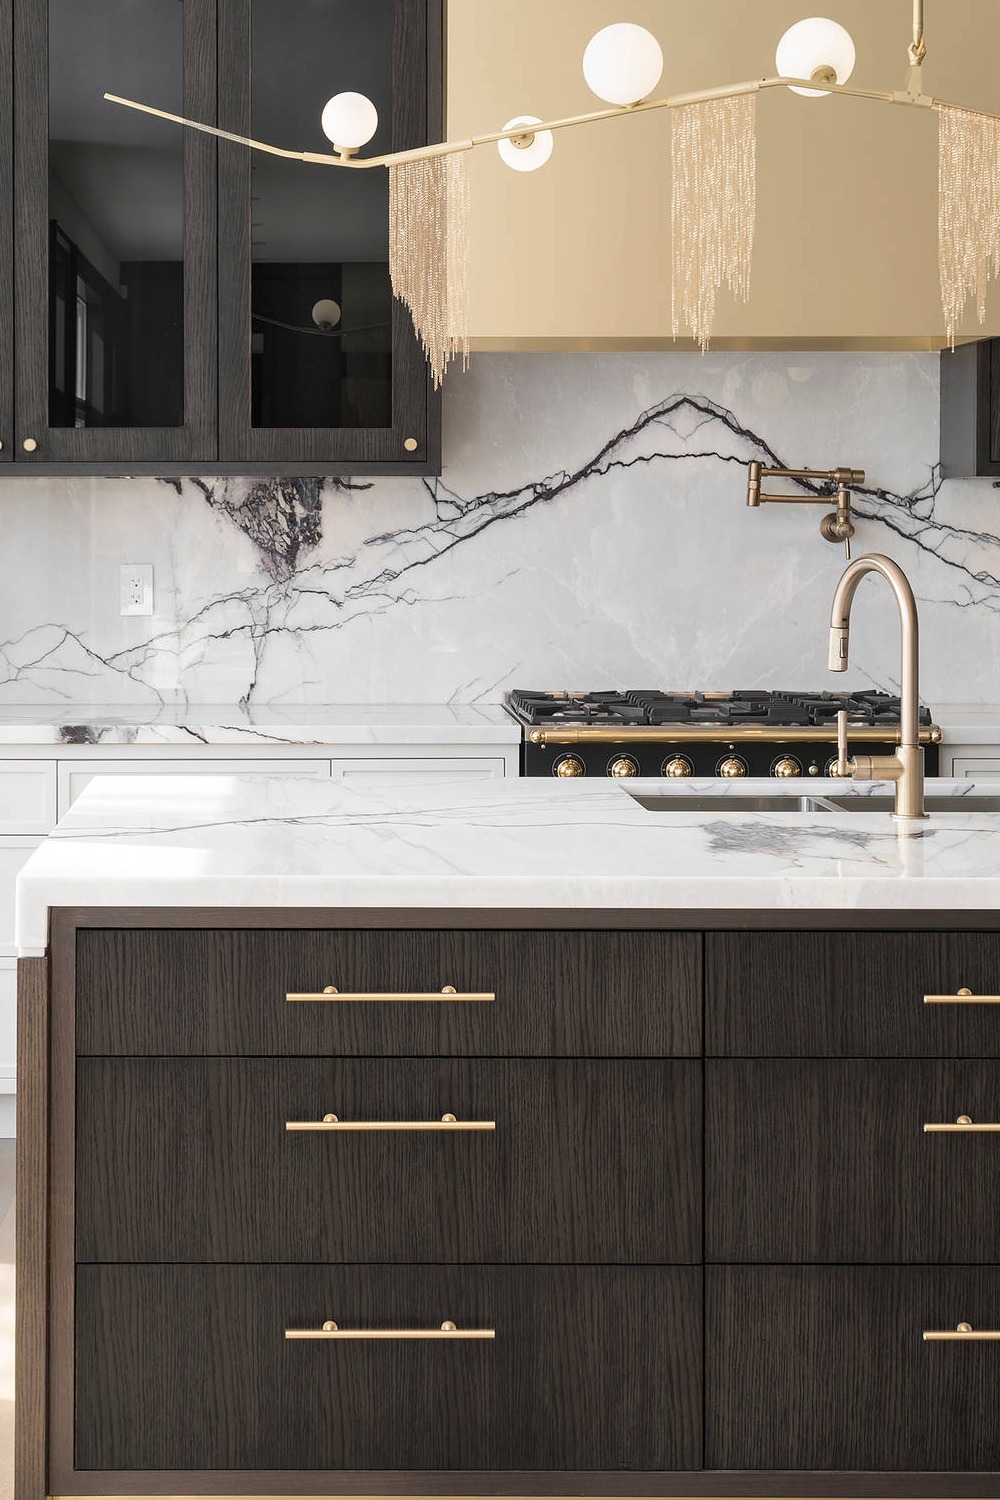 Dark Brown Cabinets With White Full Height Backsplash White Countertop Kitchen Backsplash Ideas Brass Hardware Timeless Look Kitchen Design